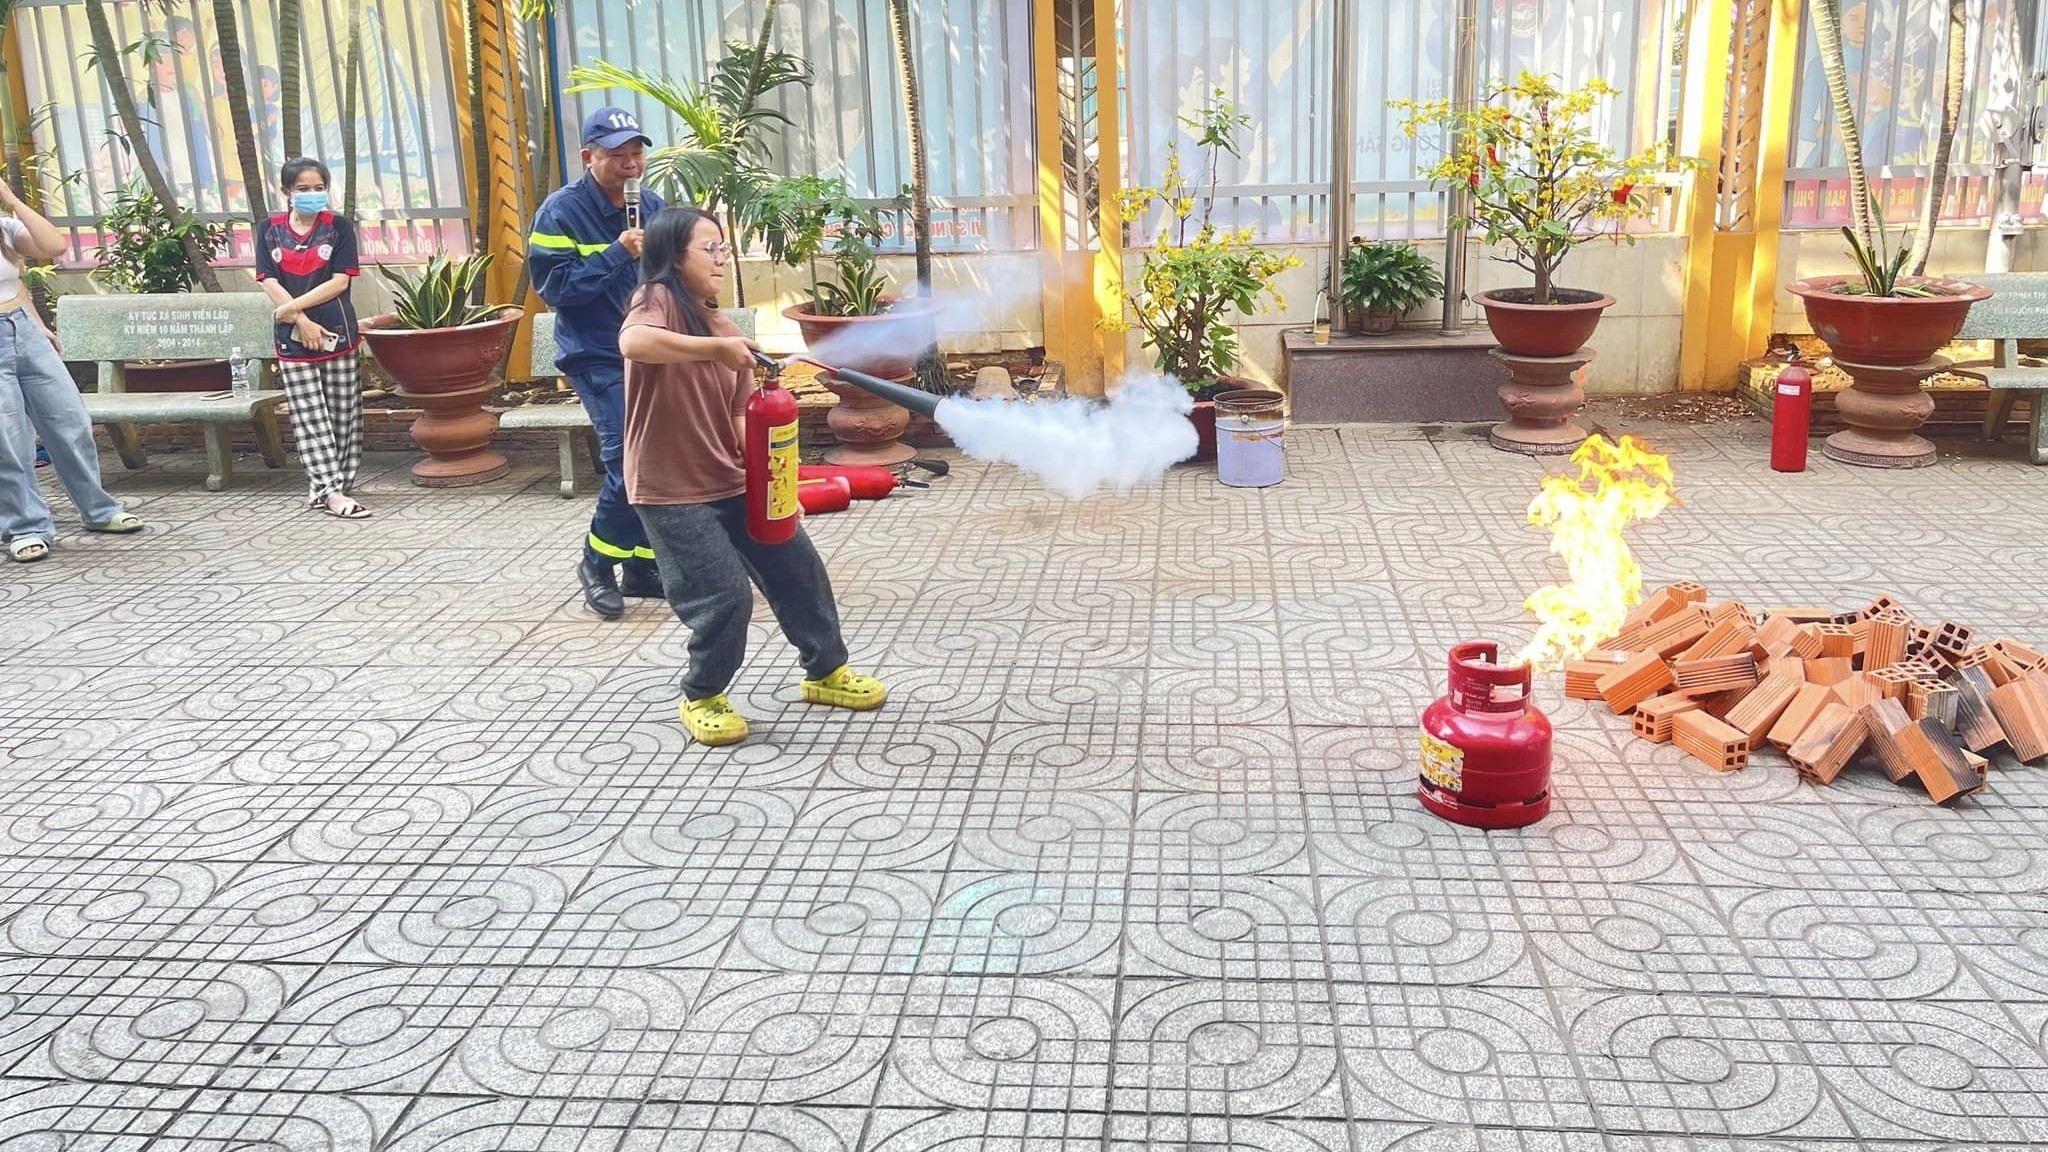 Sinh viên Lào trải nghiệm, thực hành chữa cháy tại ký túc xá